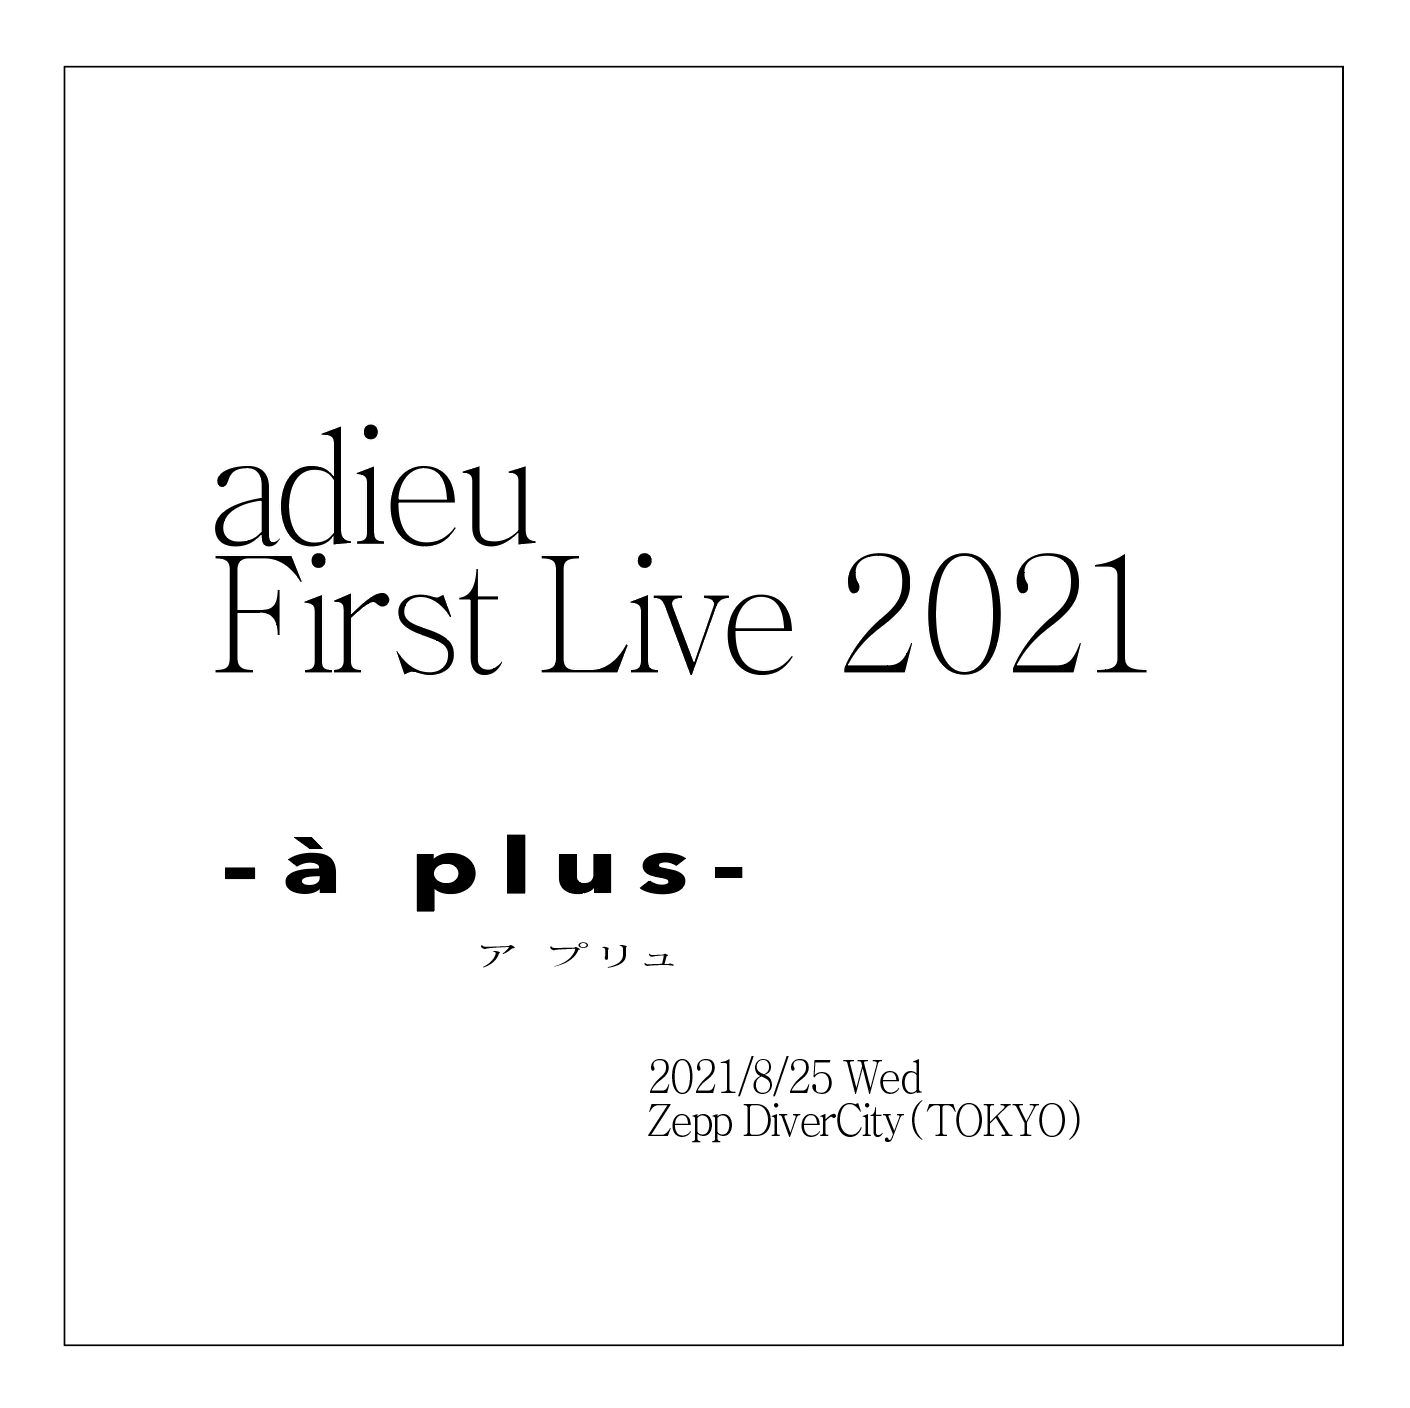 『adieu First Live 2021 -à plus- 』